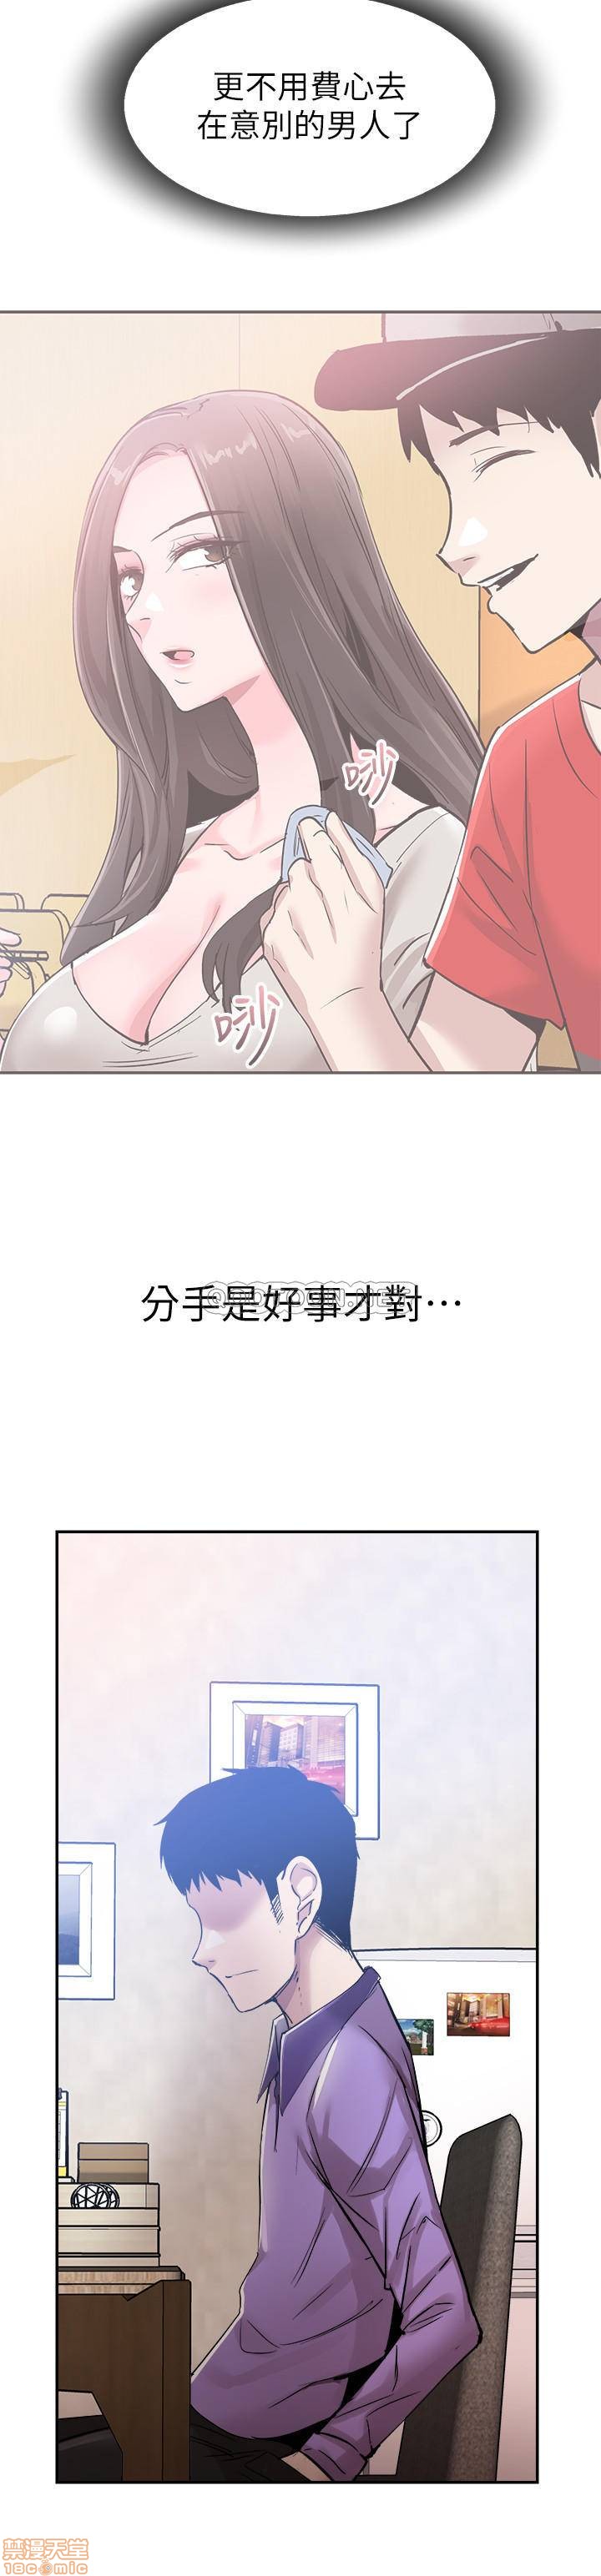 《校园LIVE秀》漫画 第59话 - 一直旷课的筱菁